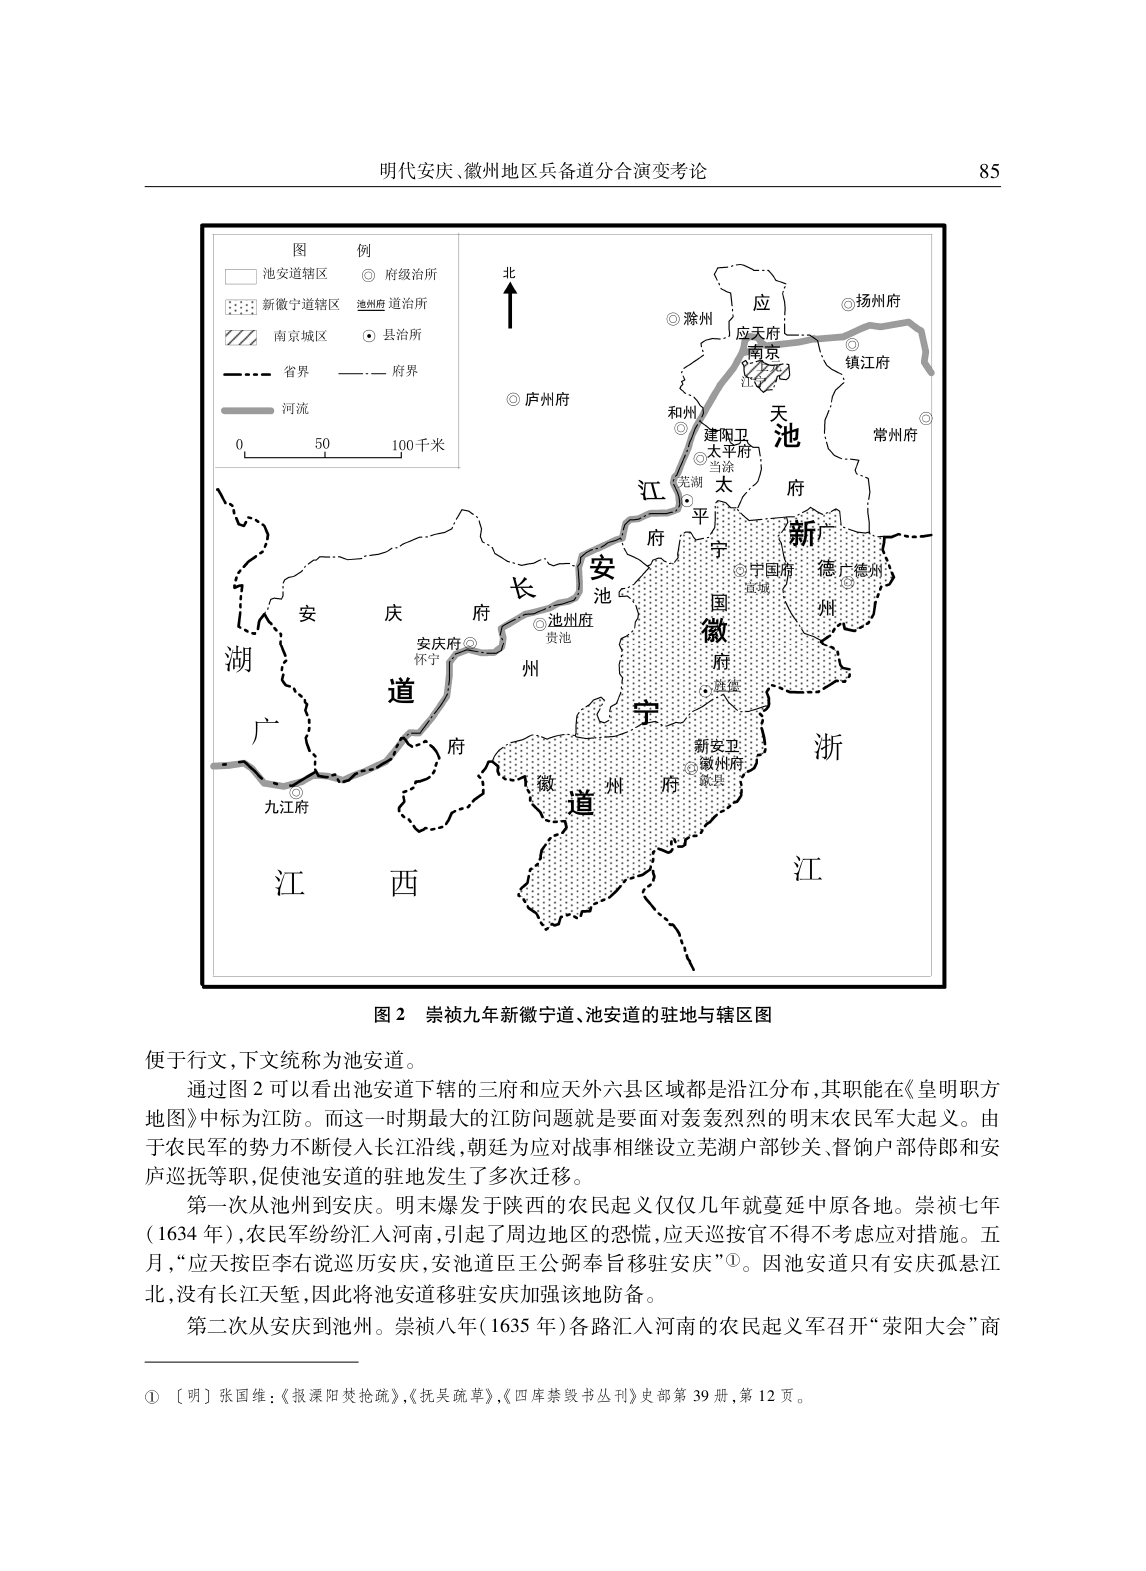 明代安庆、徽州地区兵备道分合演变考论_page-0014.jpg